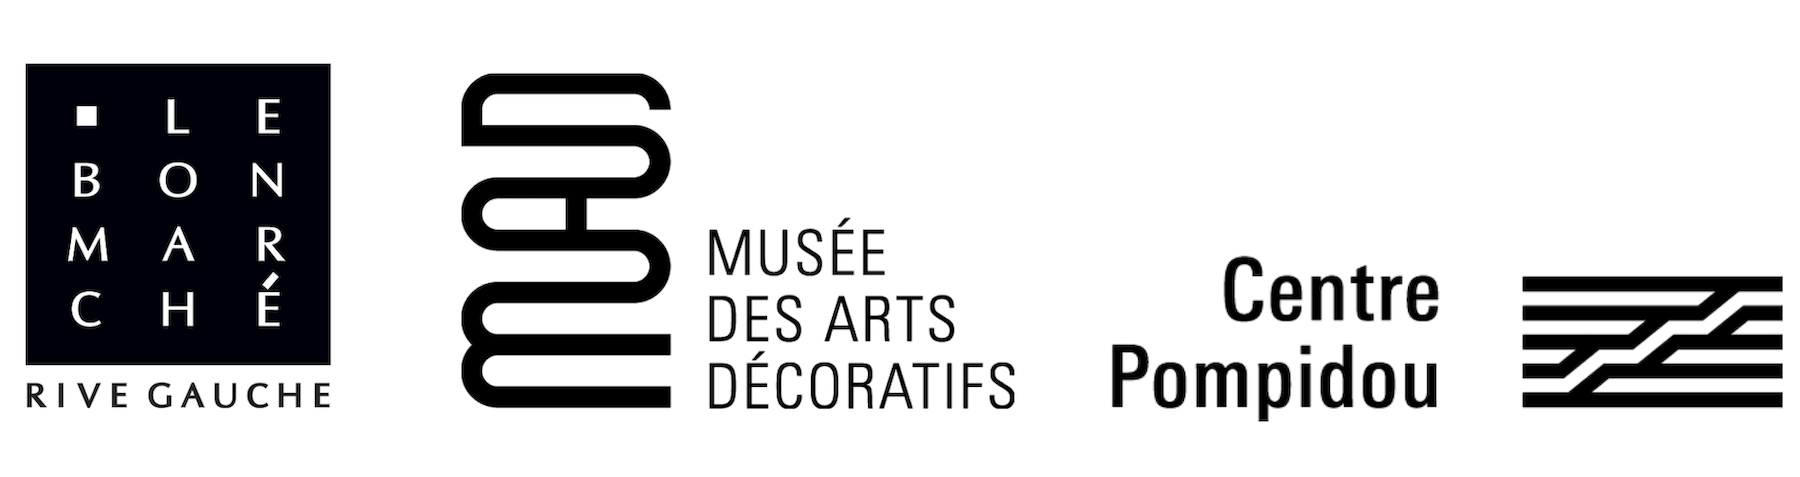 alto-duo-bon-marche-pompidou-arts-decoratifs-1